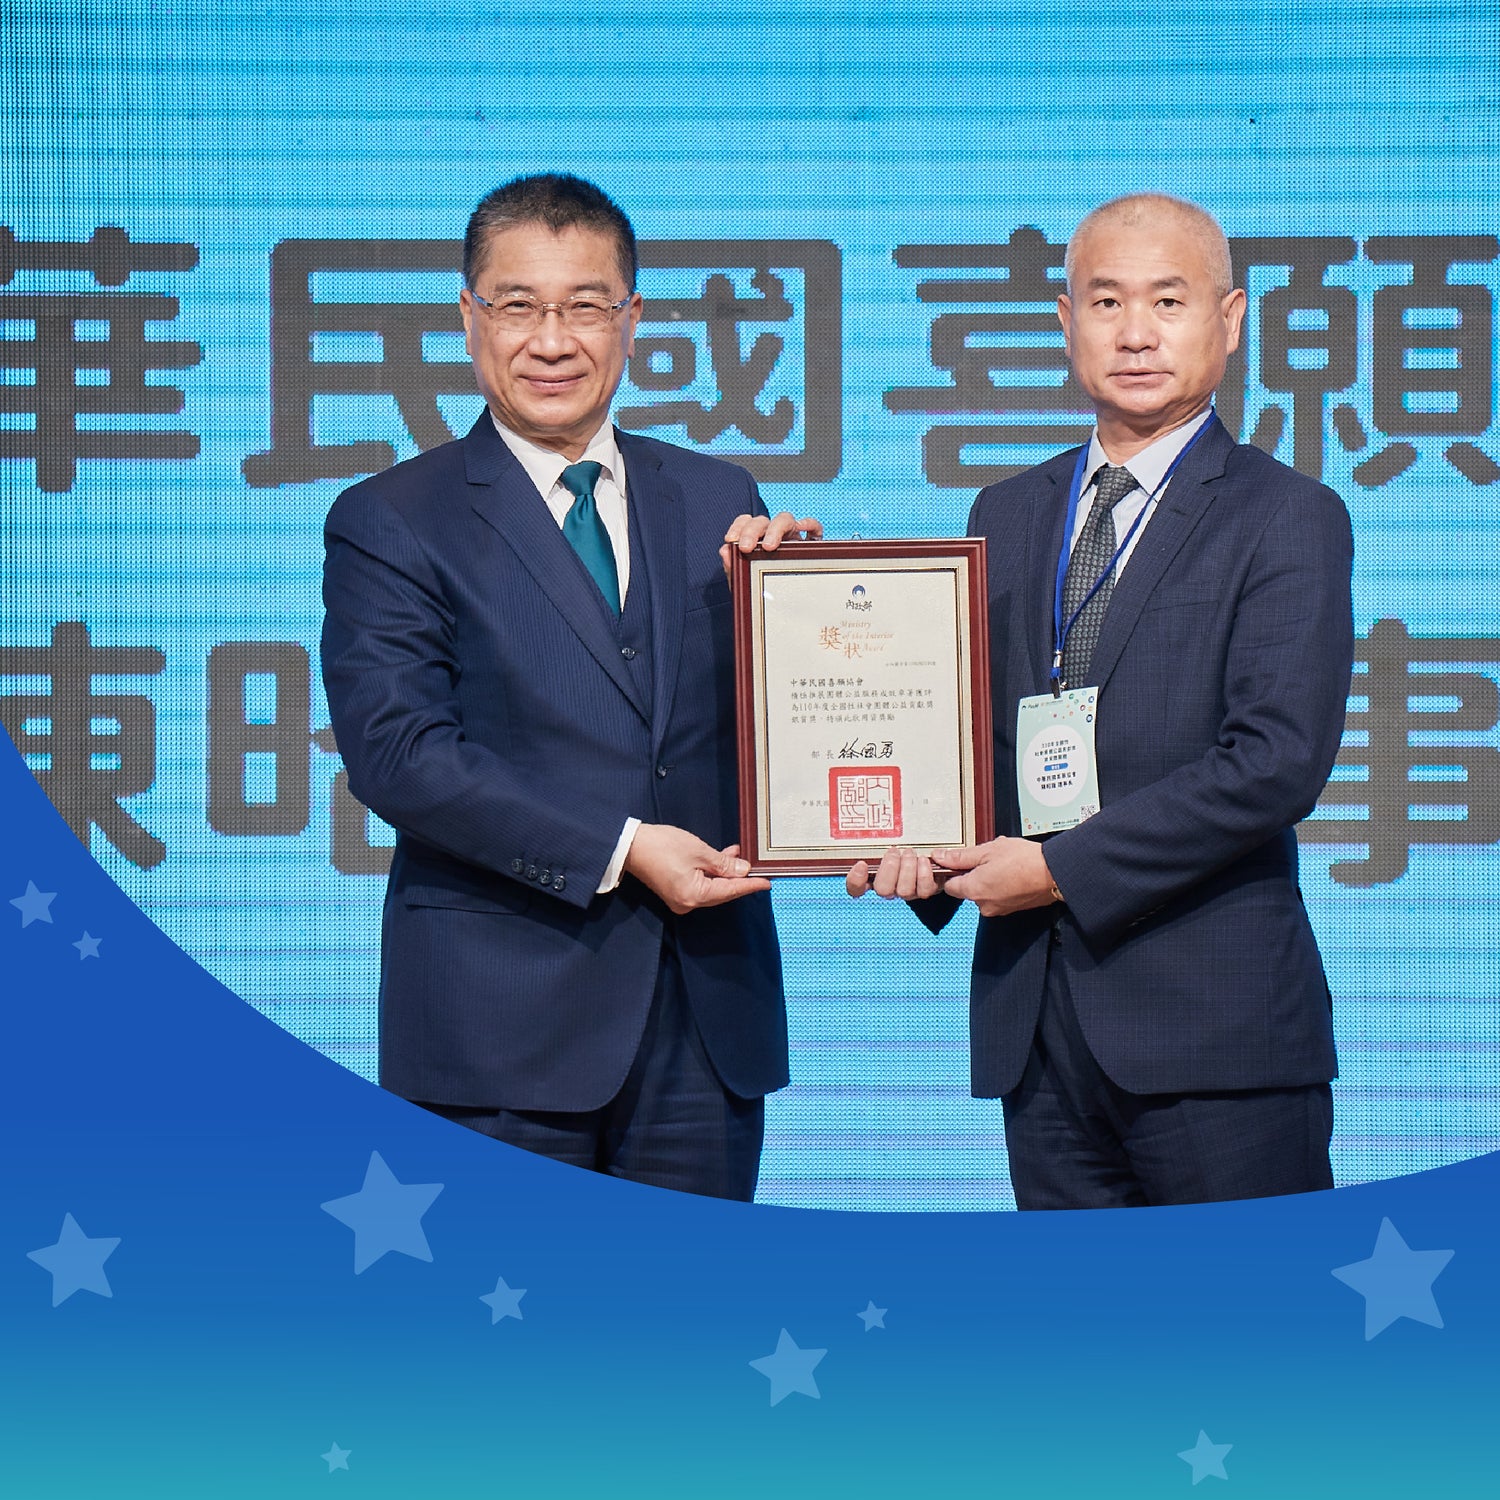 中華民國喜願協會獲評為110年度「社會服務類銀質獎」(全國唯二)！